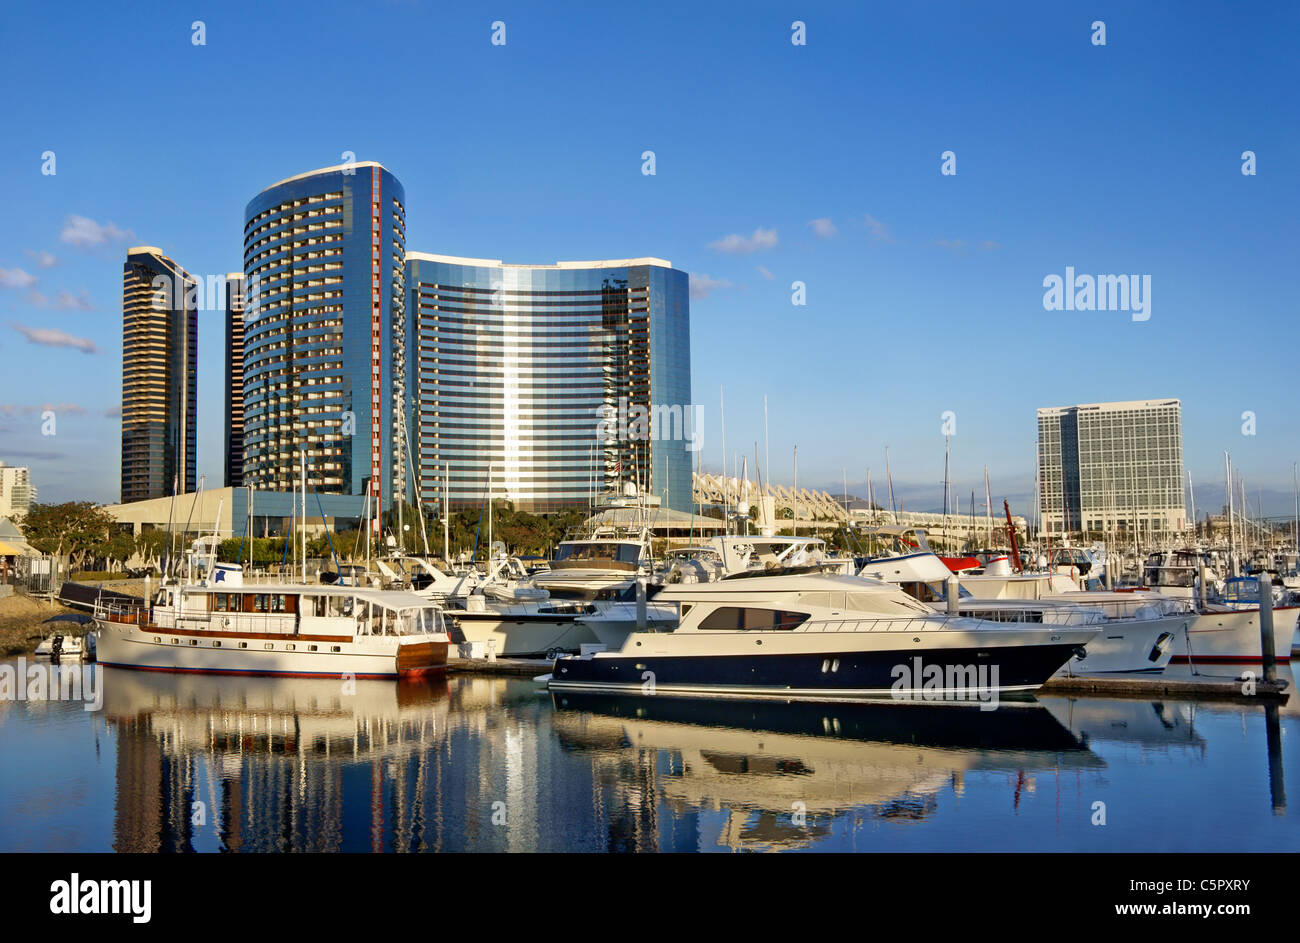 San Diego, CA, California. Vista de yates de lujo y hoteles frente al mar desde el embarcadero Marina Park. Foto de stock